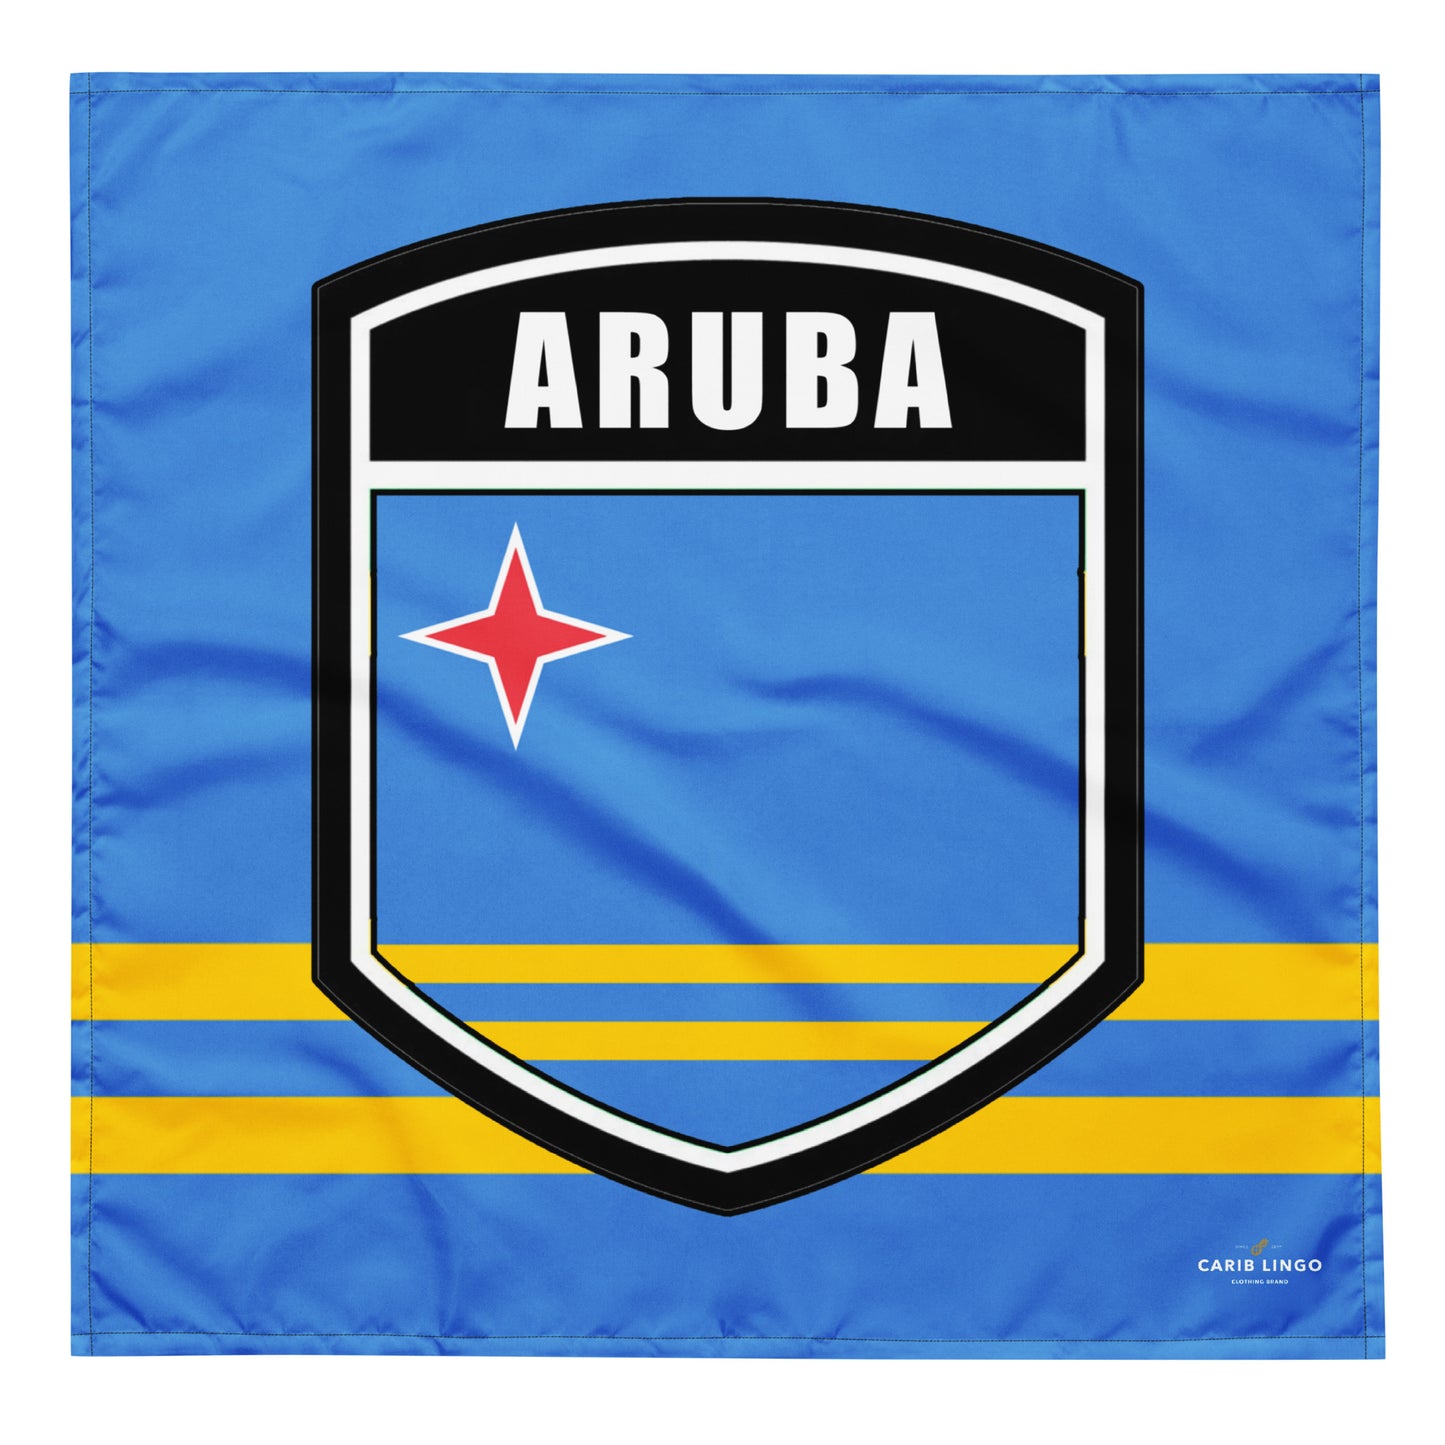 Aruba bandana